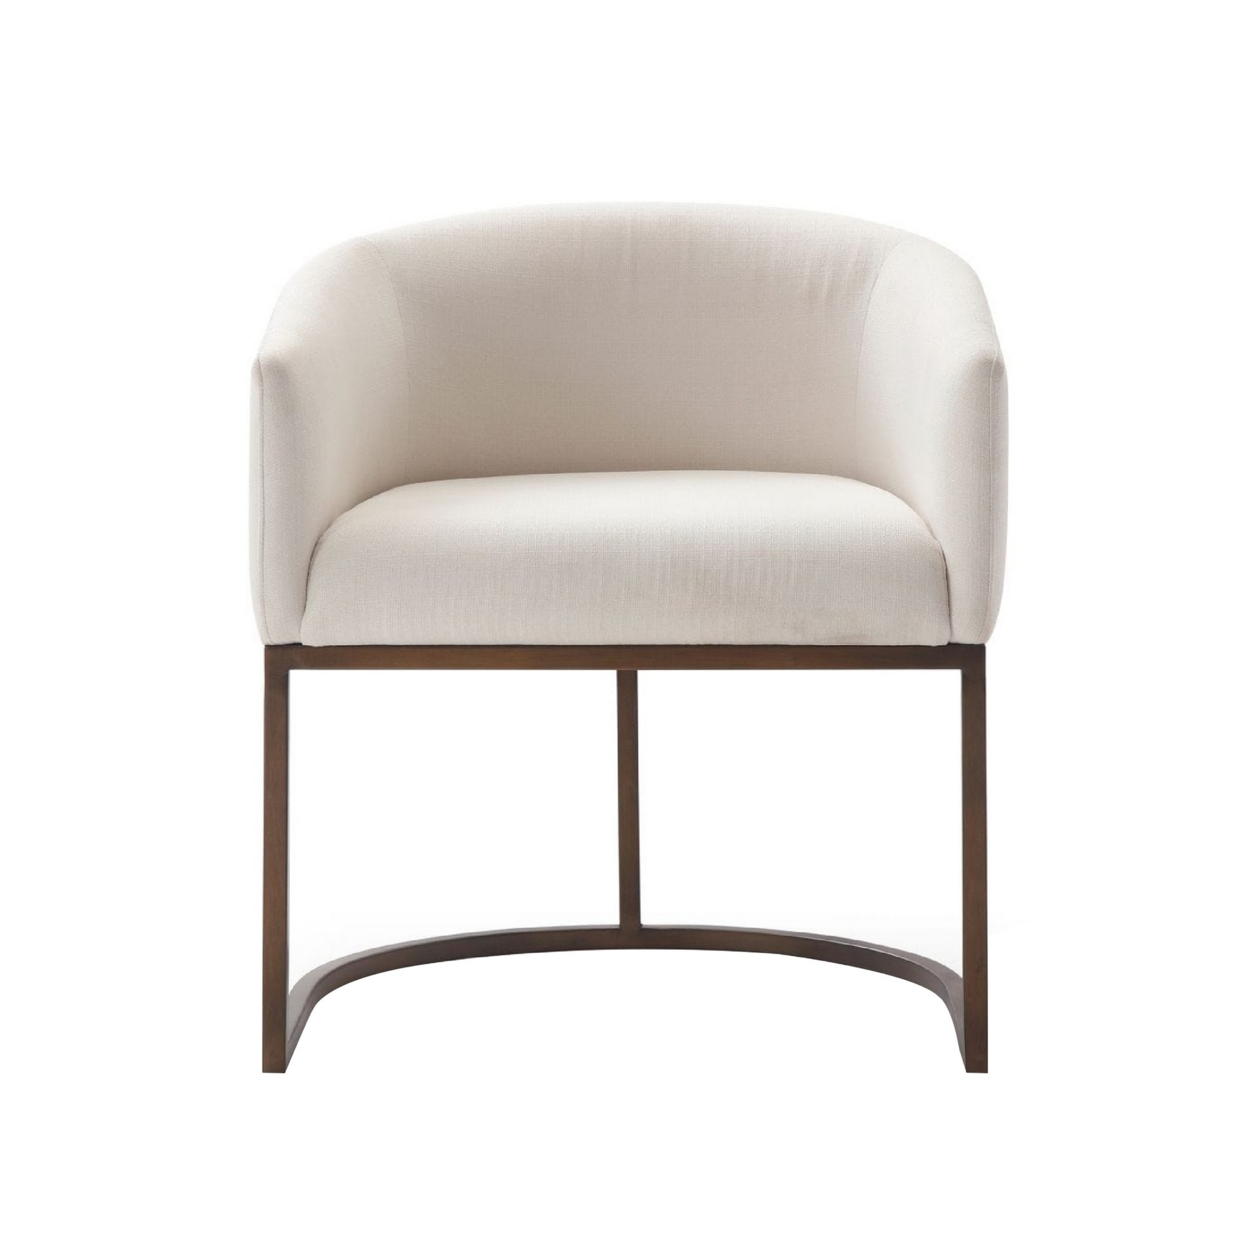 Cid 24 Inch Modern Dinning Chair, Stain Resistant Velvet And Brass, Beige- Saltoro Sherpi